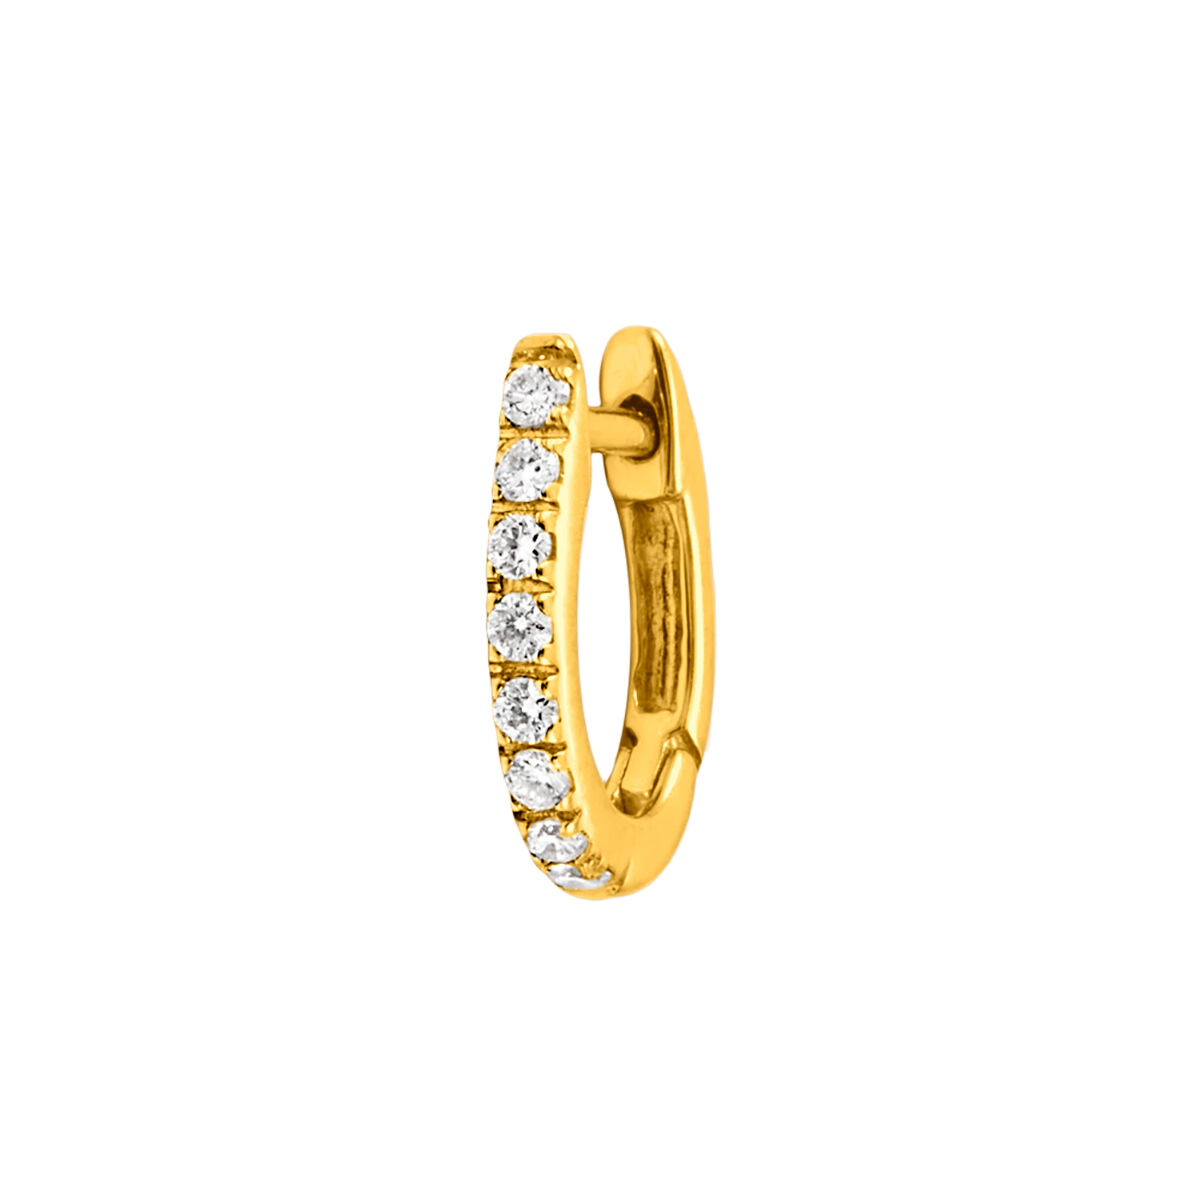 Pendiente individual aro pequeño de oro amarillo de 18kt con diamantes de 0,08cts, J00597-02-NEW-H, hi-res